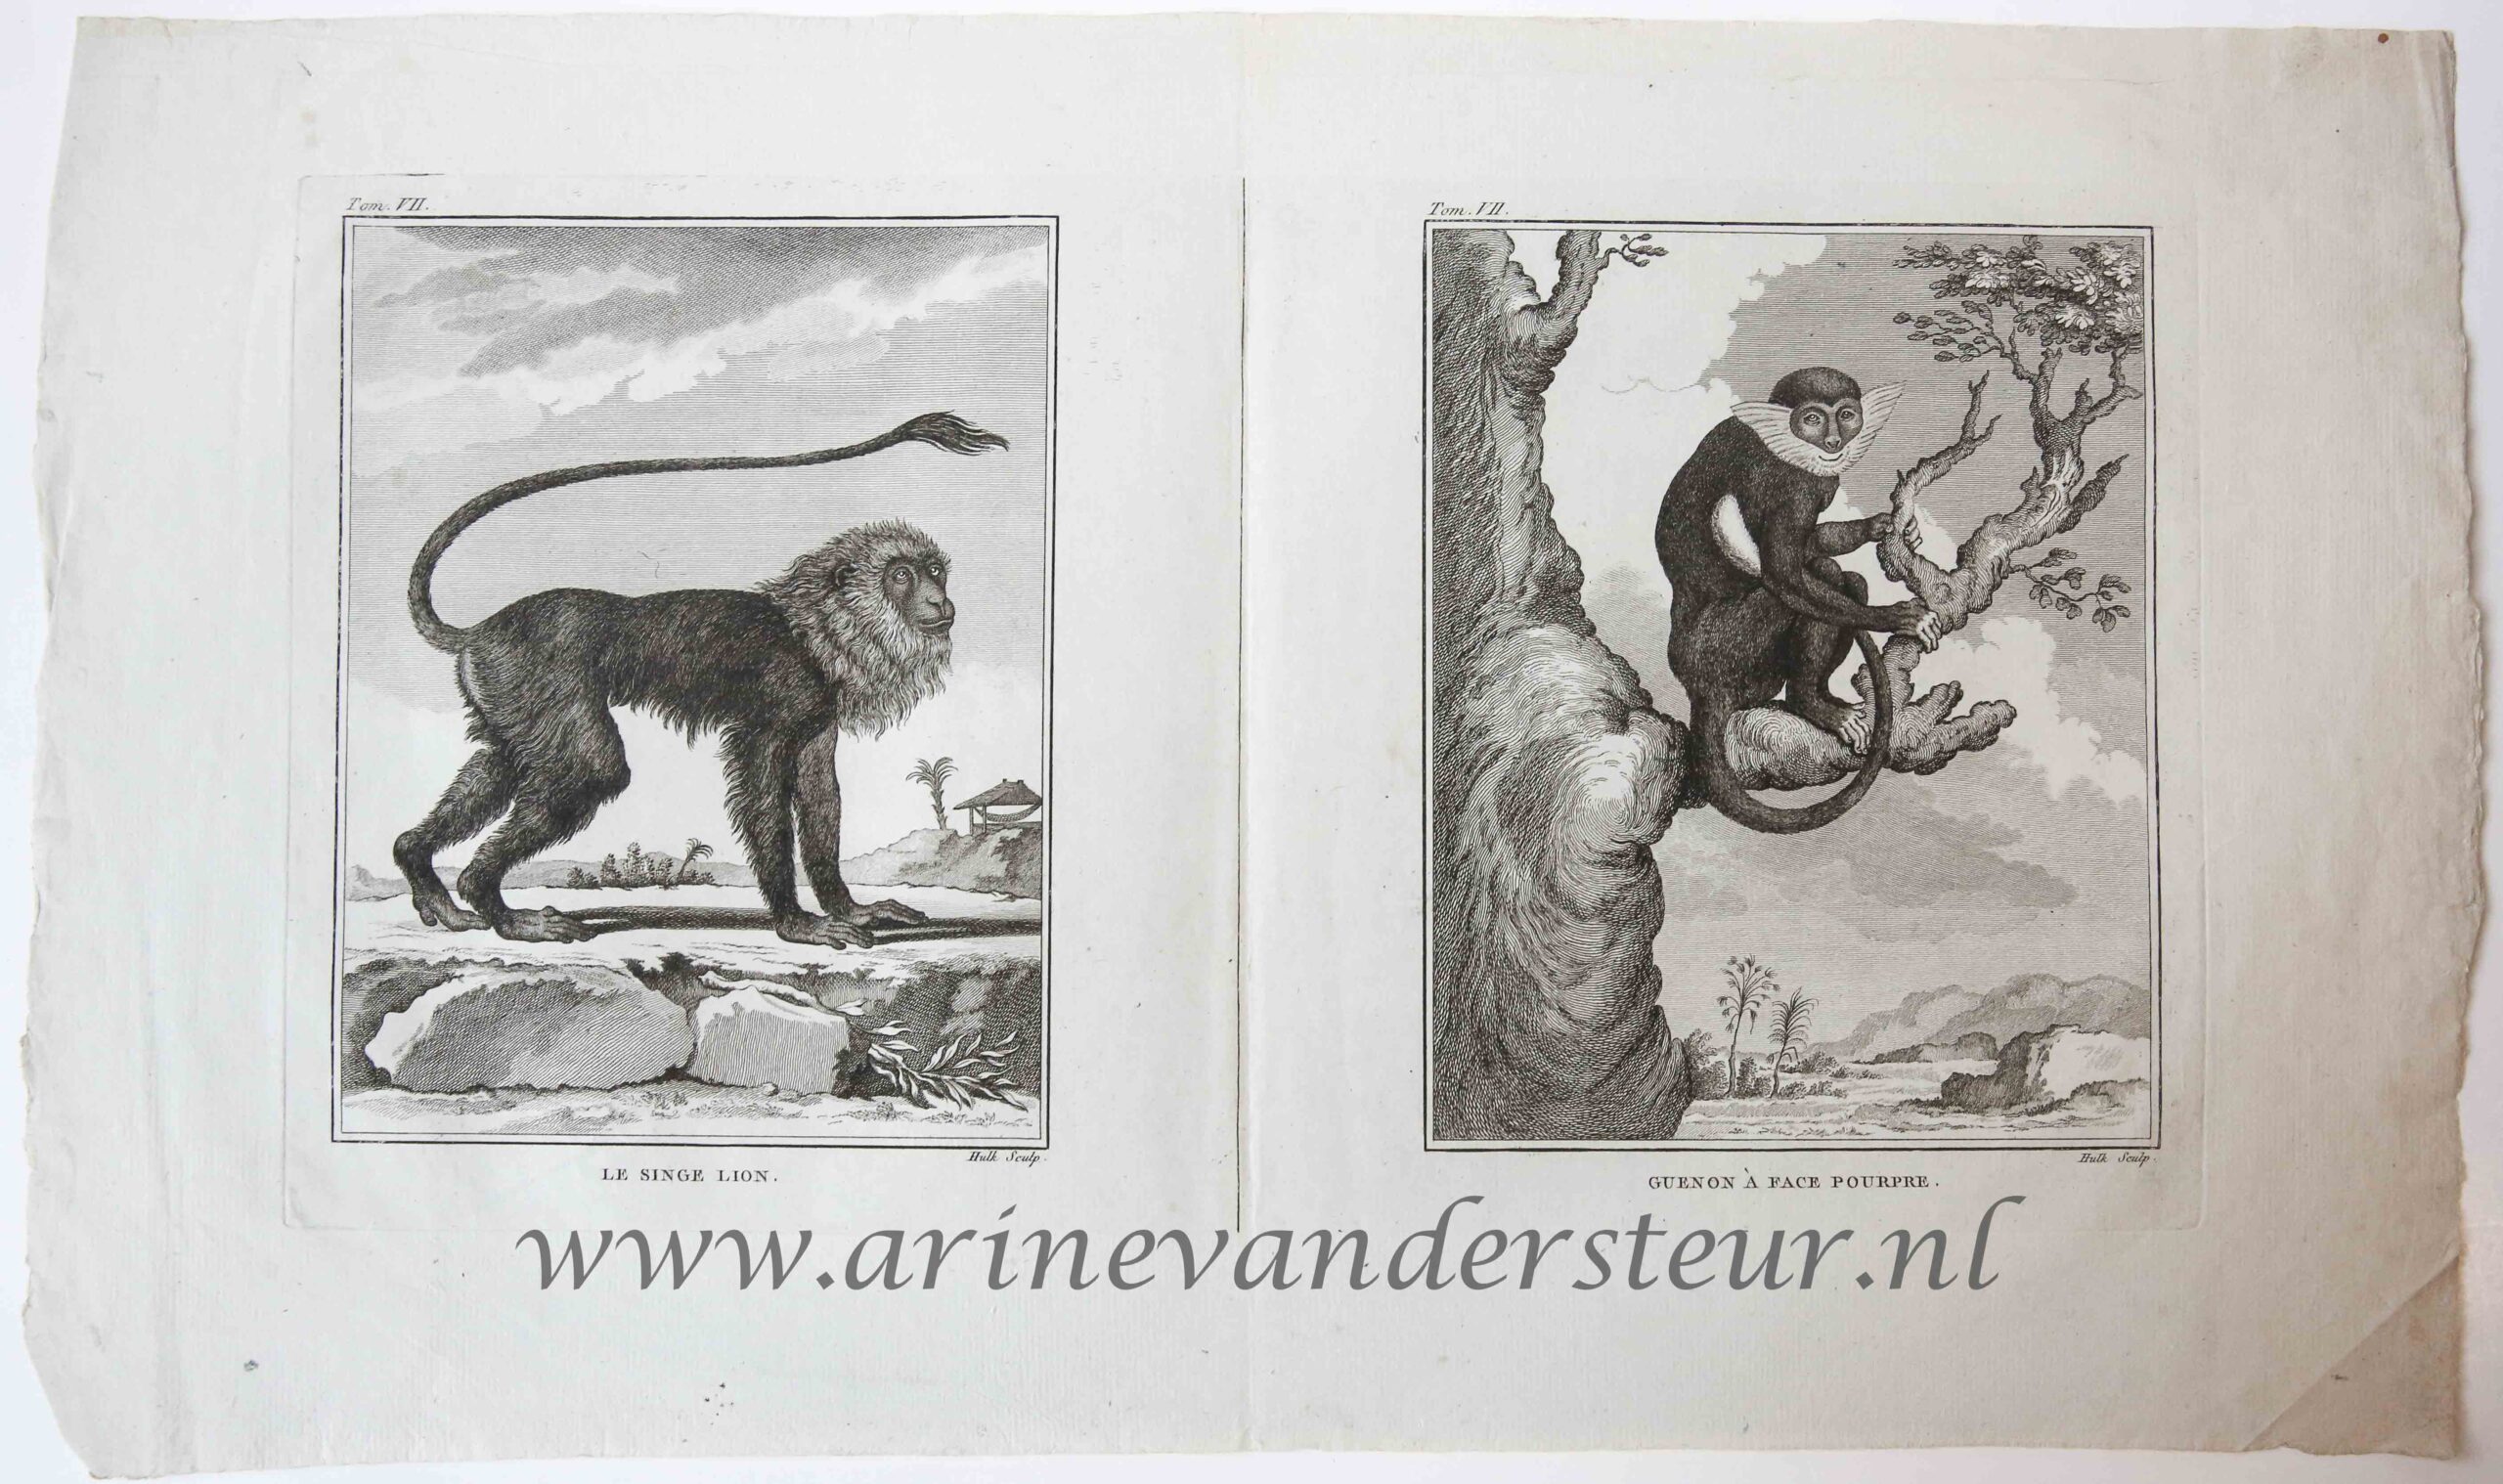 [Original etching] LE SINGE LION. / GUENON A FACE POURPRE (leeuw en Diana aap), ca 1766-1799.